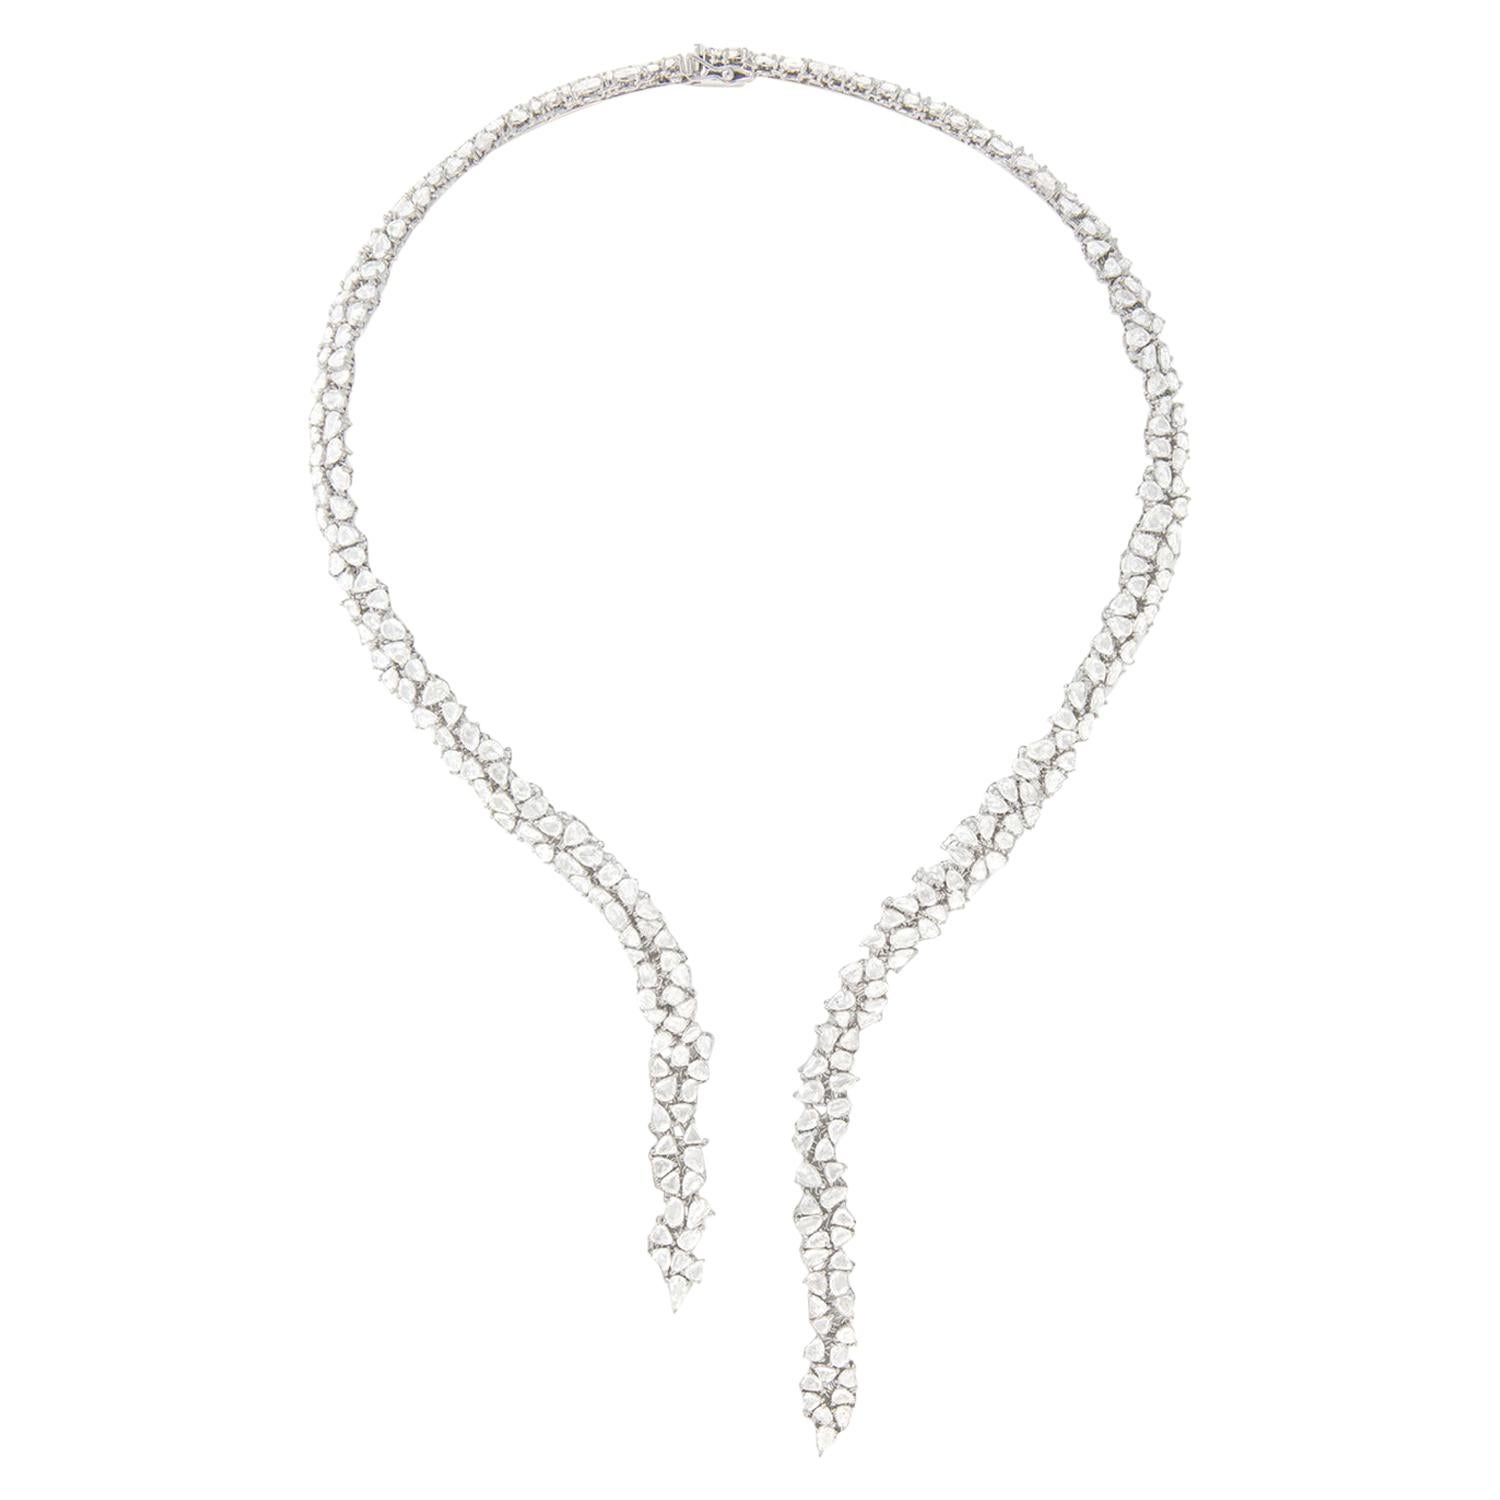 Monique Péan White Rose Cut Diamond Open Collar Necklace, 18 Carat White Gold For Sale